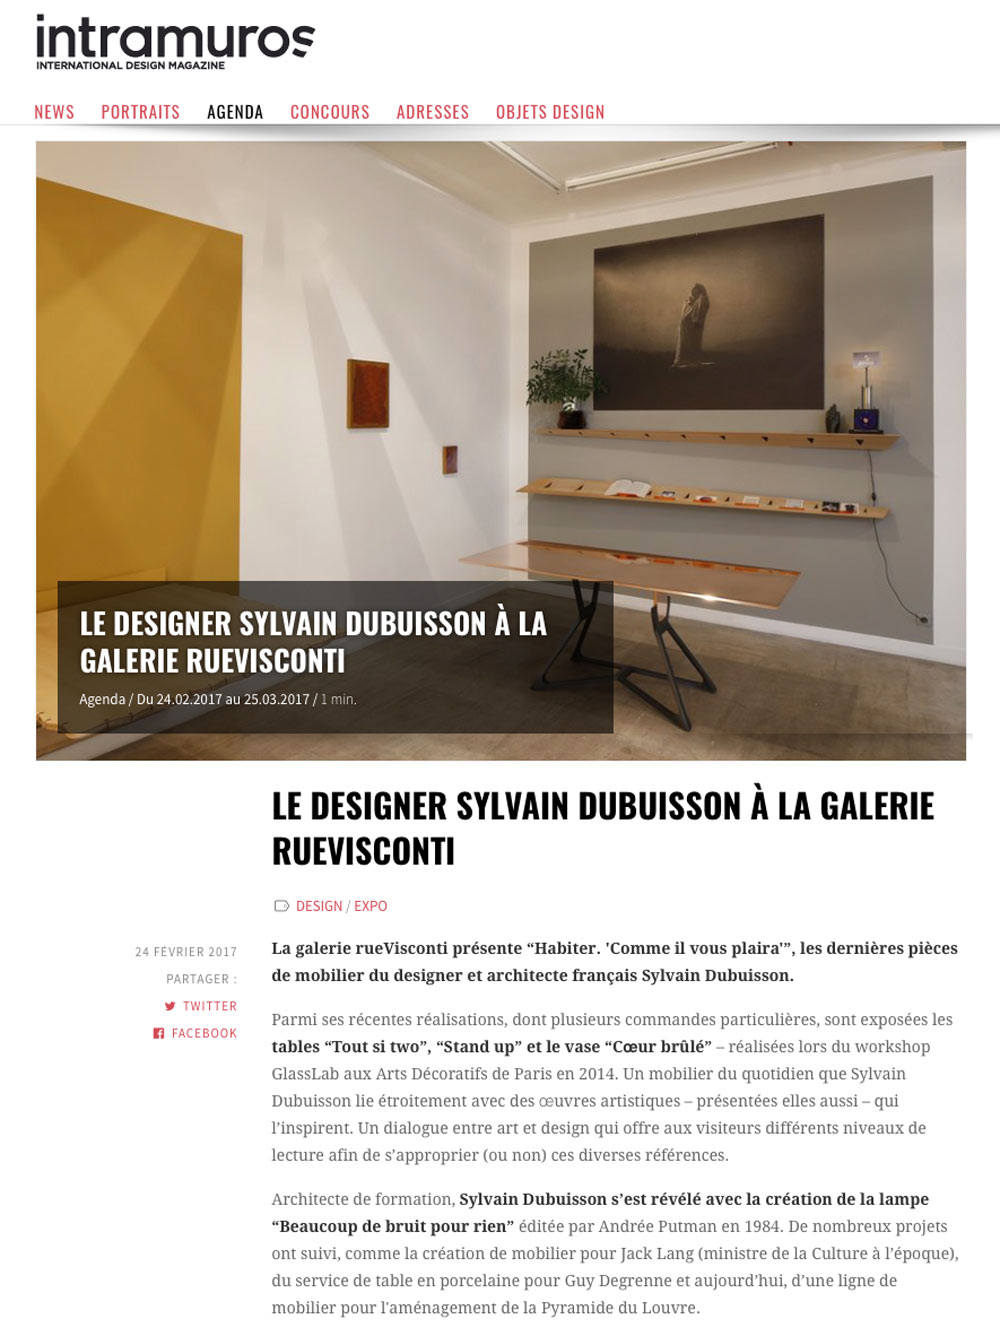 Article sur l"exposition de Sylvain Dubuisson dans INTRAMUROS